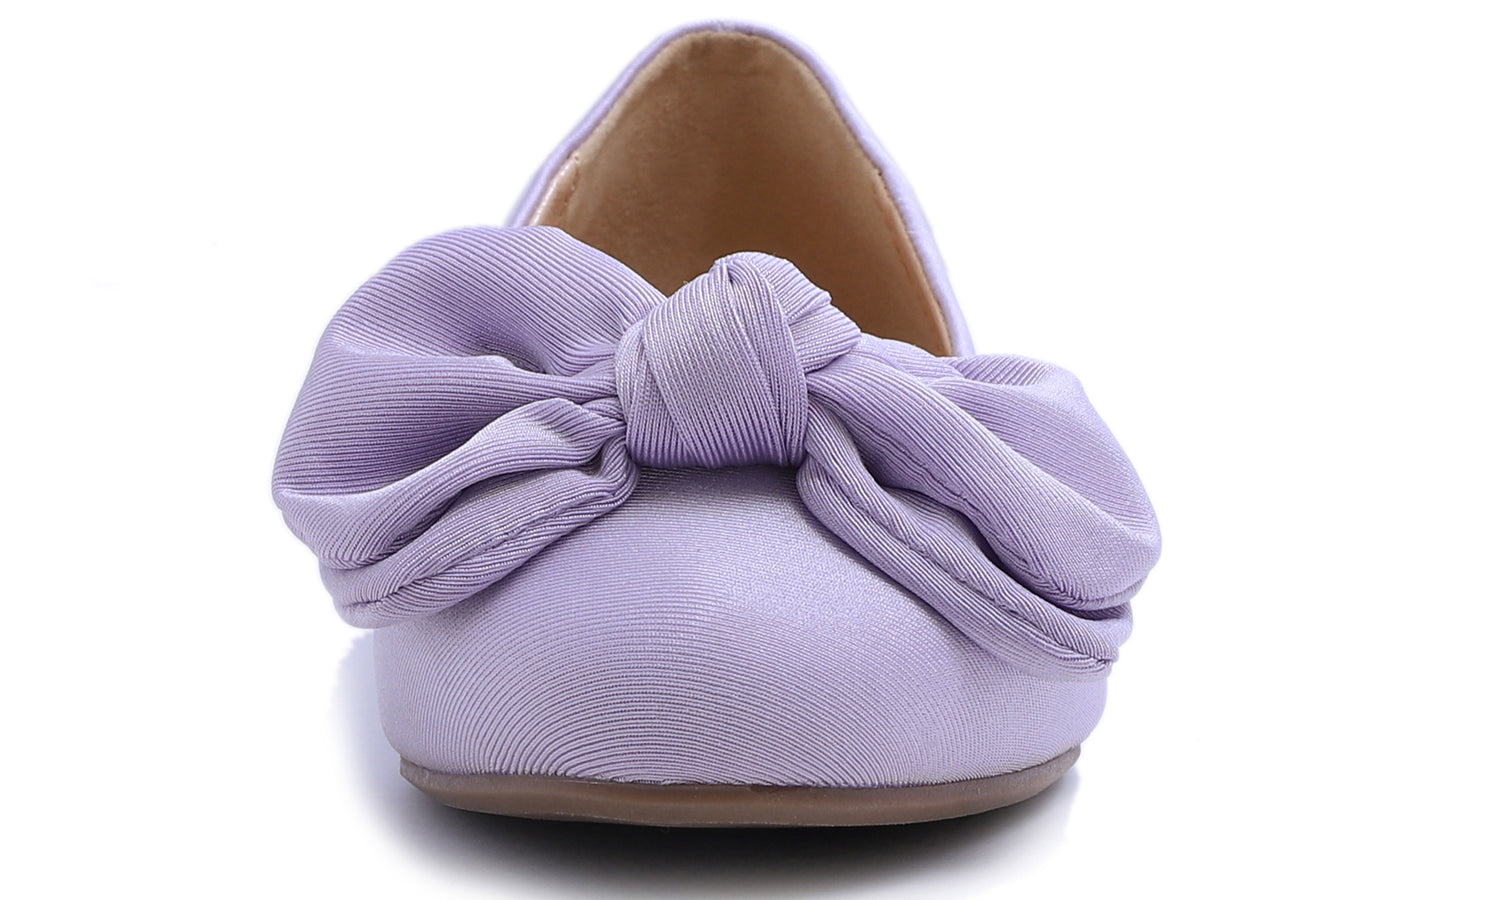 Feversole Women's Round Toe Cute Bow Trim Ballet Flats Lavender Purple